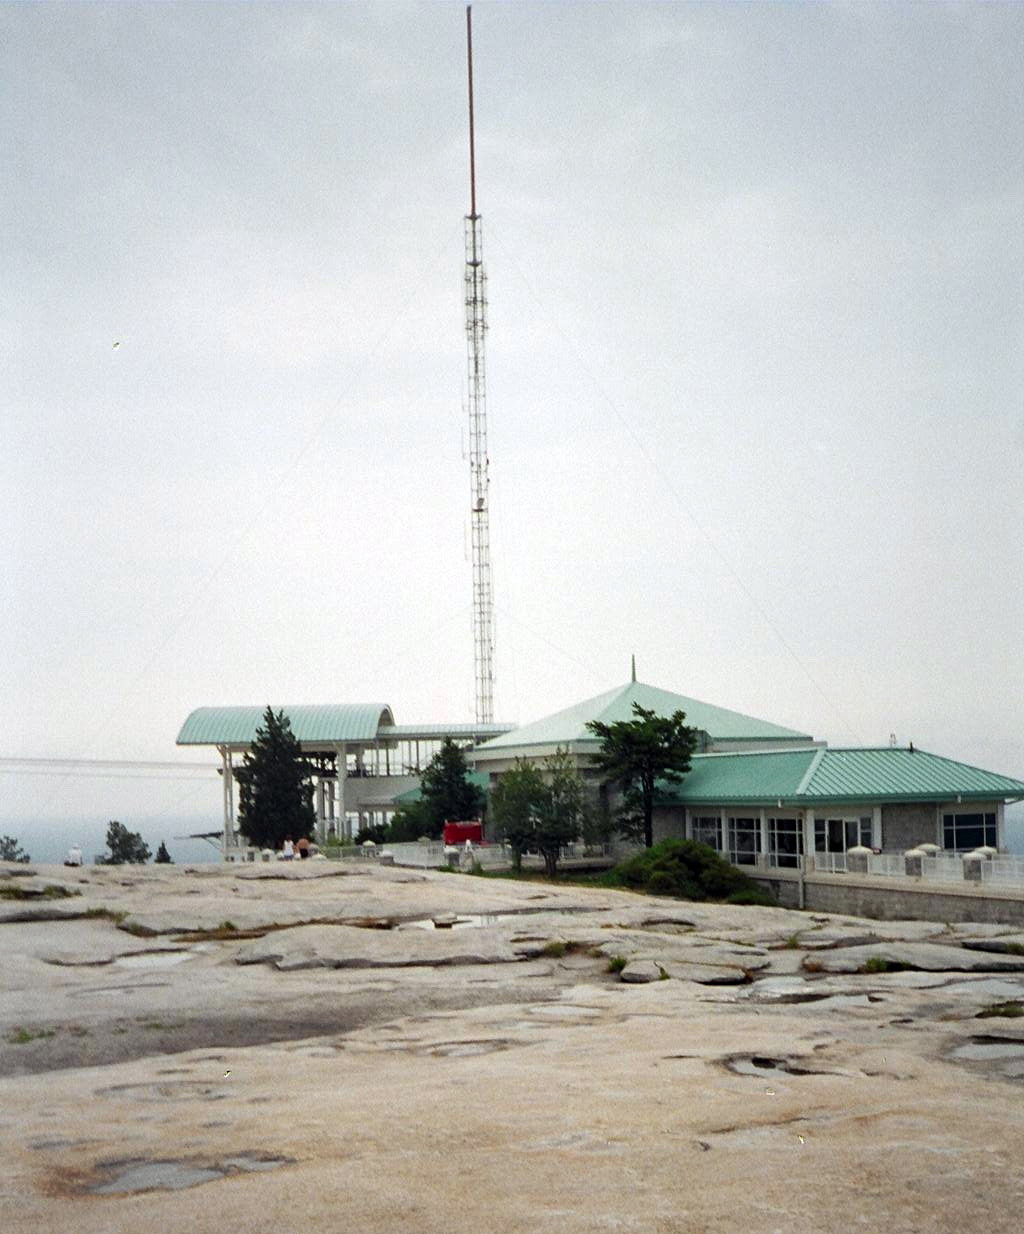 Transmitting Tower